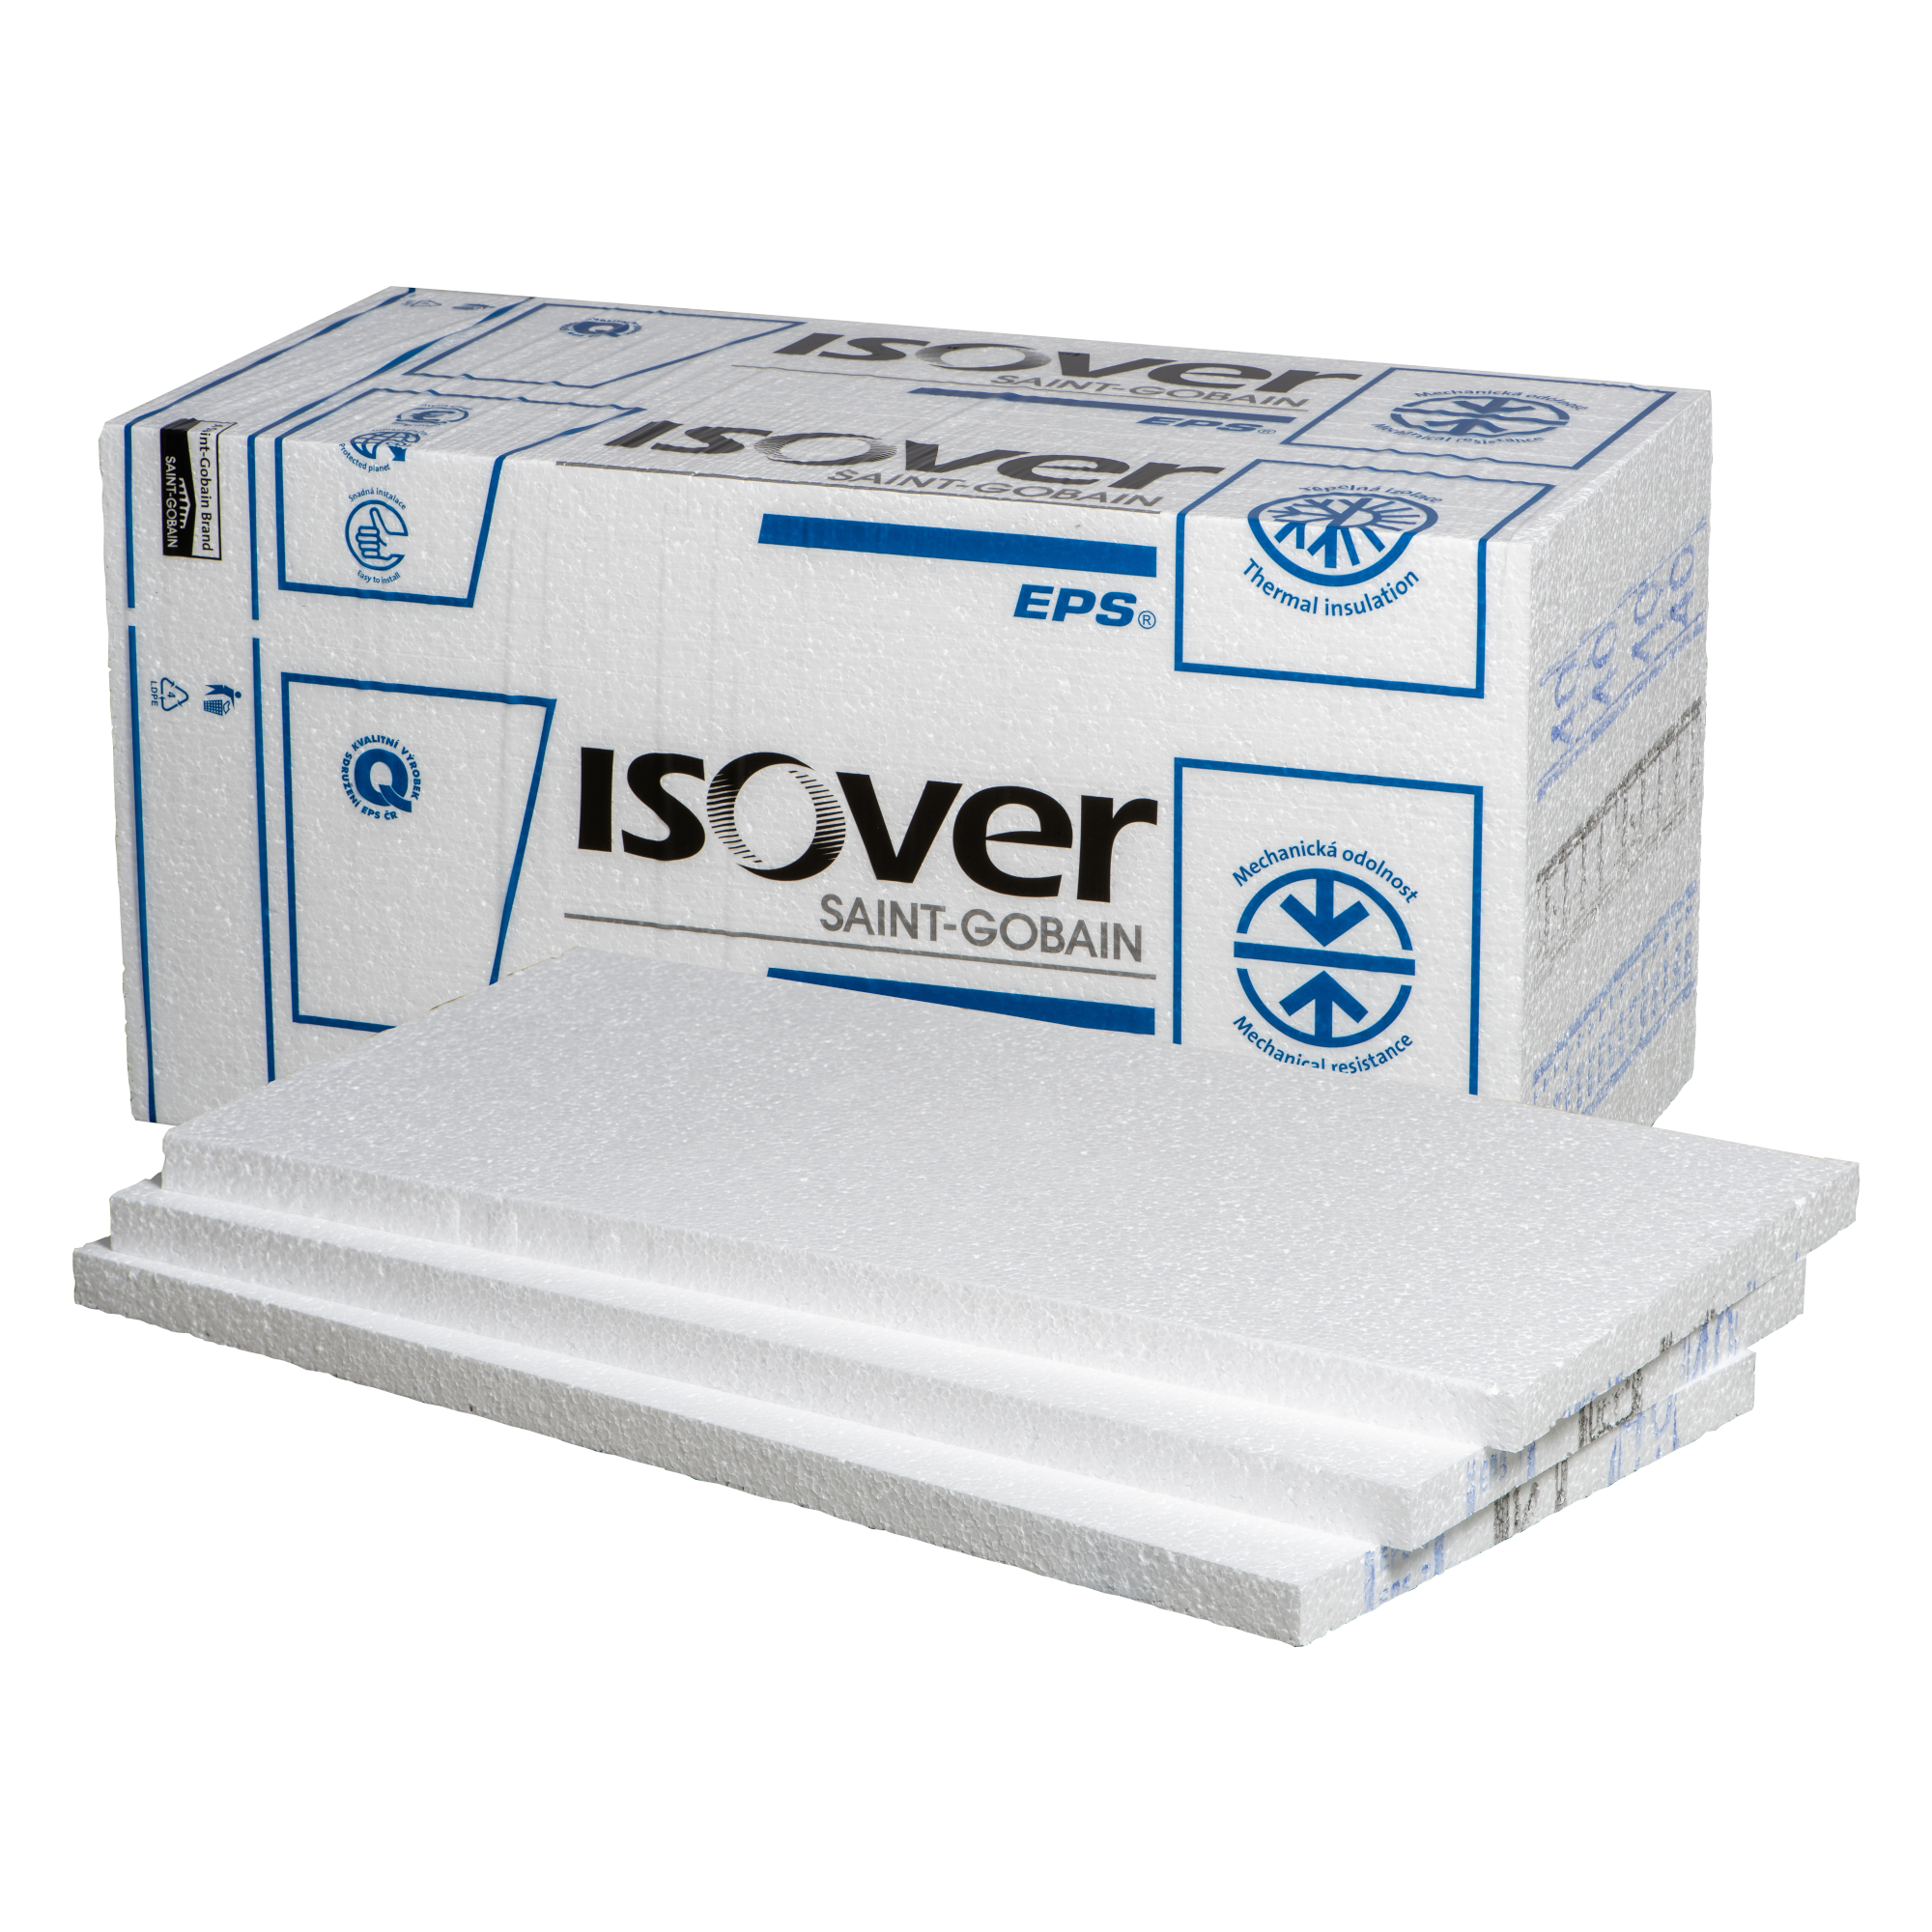 Polystyren podlahový ISOVER EPS Rigifloor 4000 20 mm (12